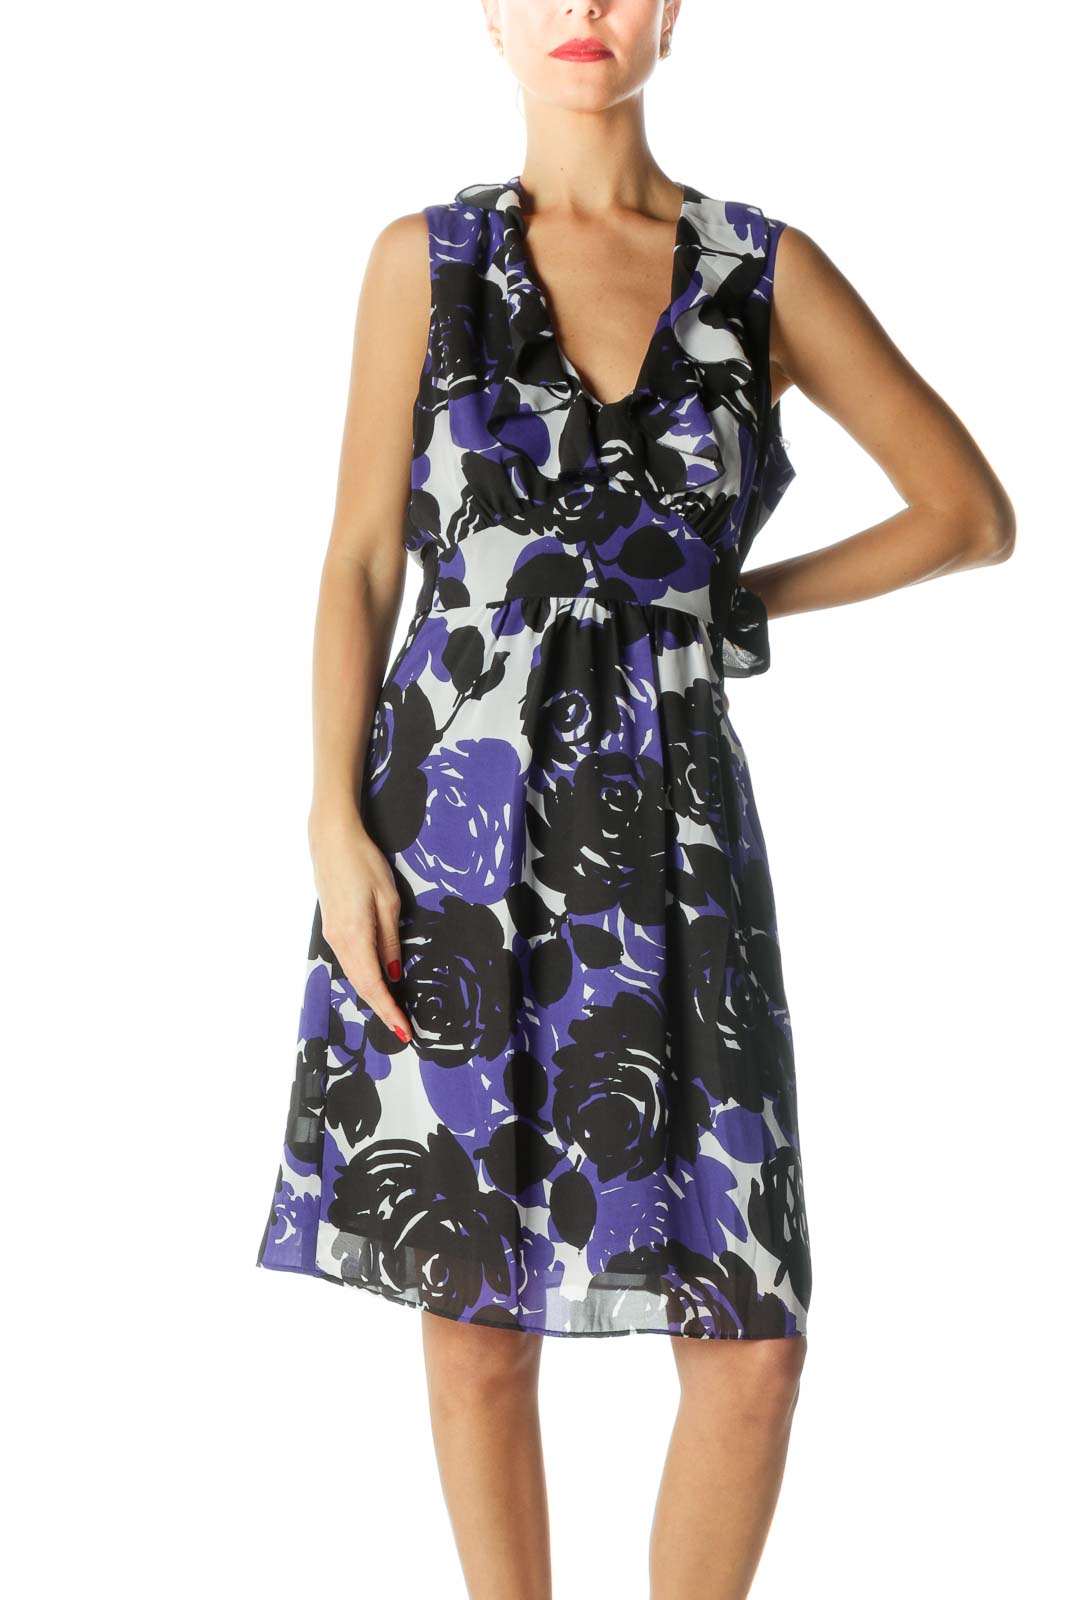 Blue Black White V-Neck Floral Print Flared Dress Front